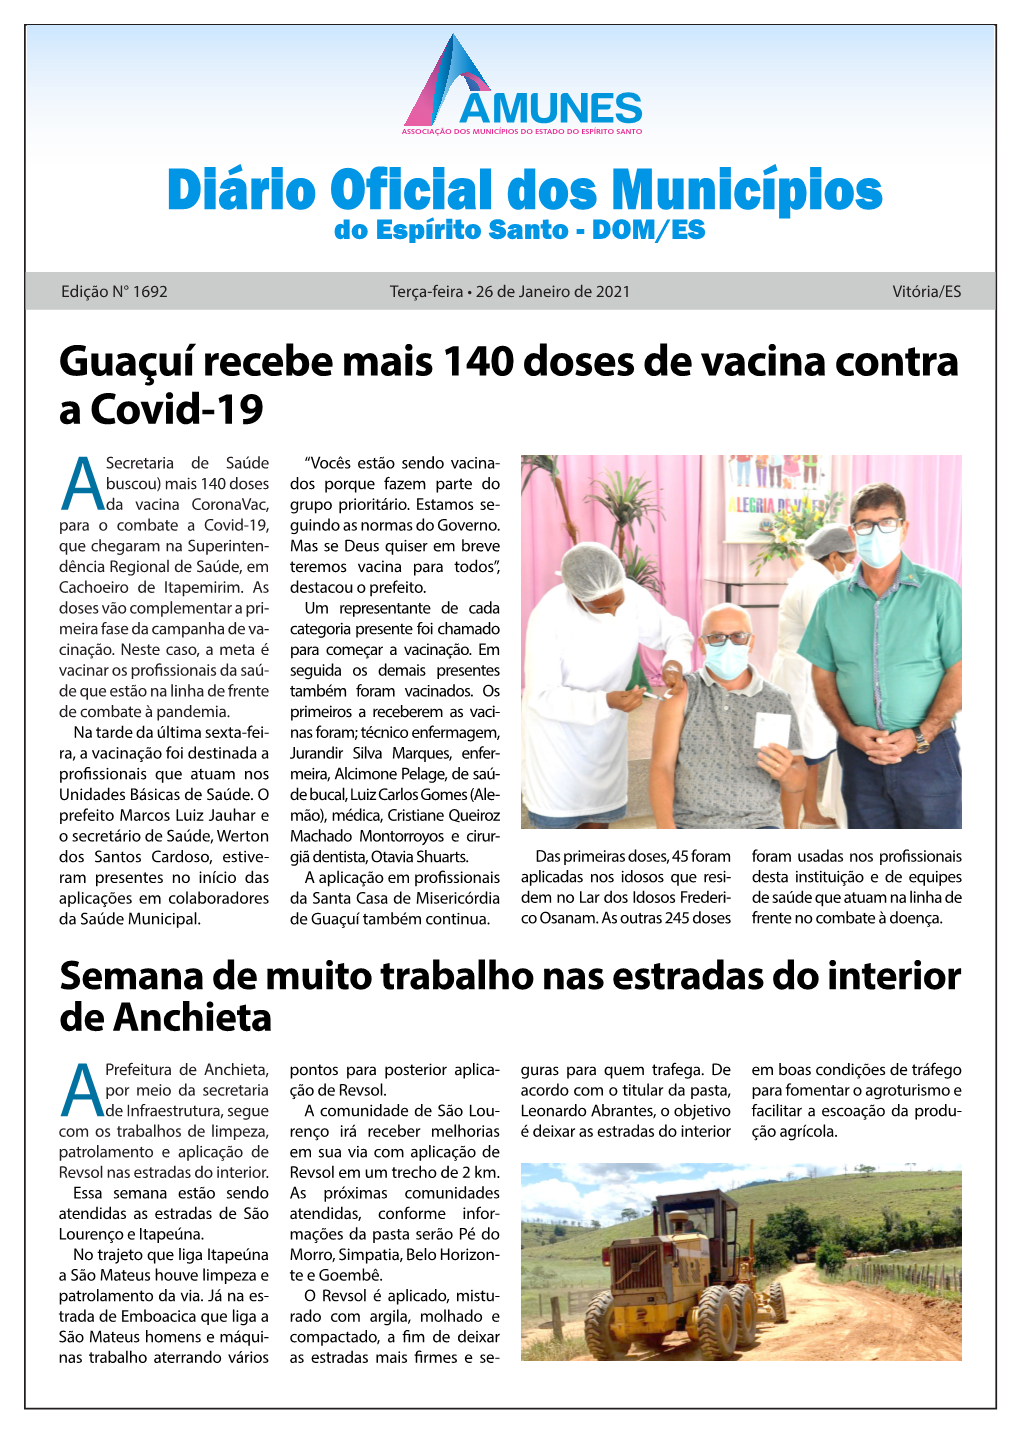 Guaçuí Recebe Mais 140 Doses De Vacina Contra a Covid-19